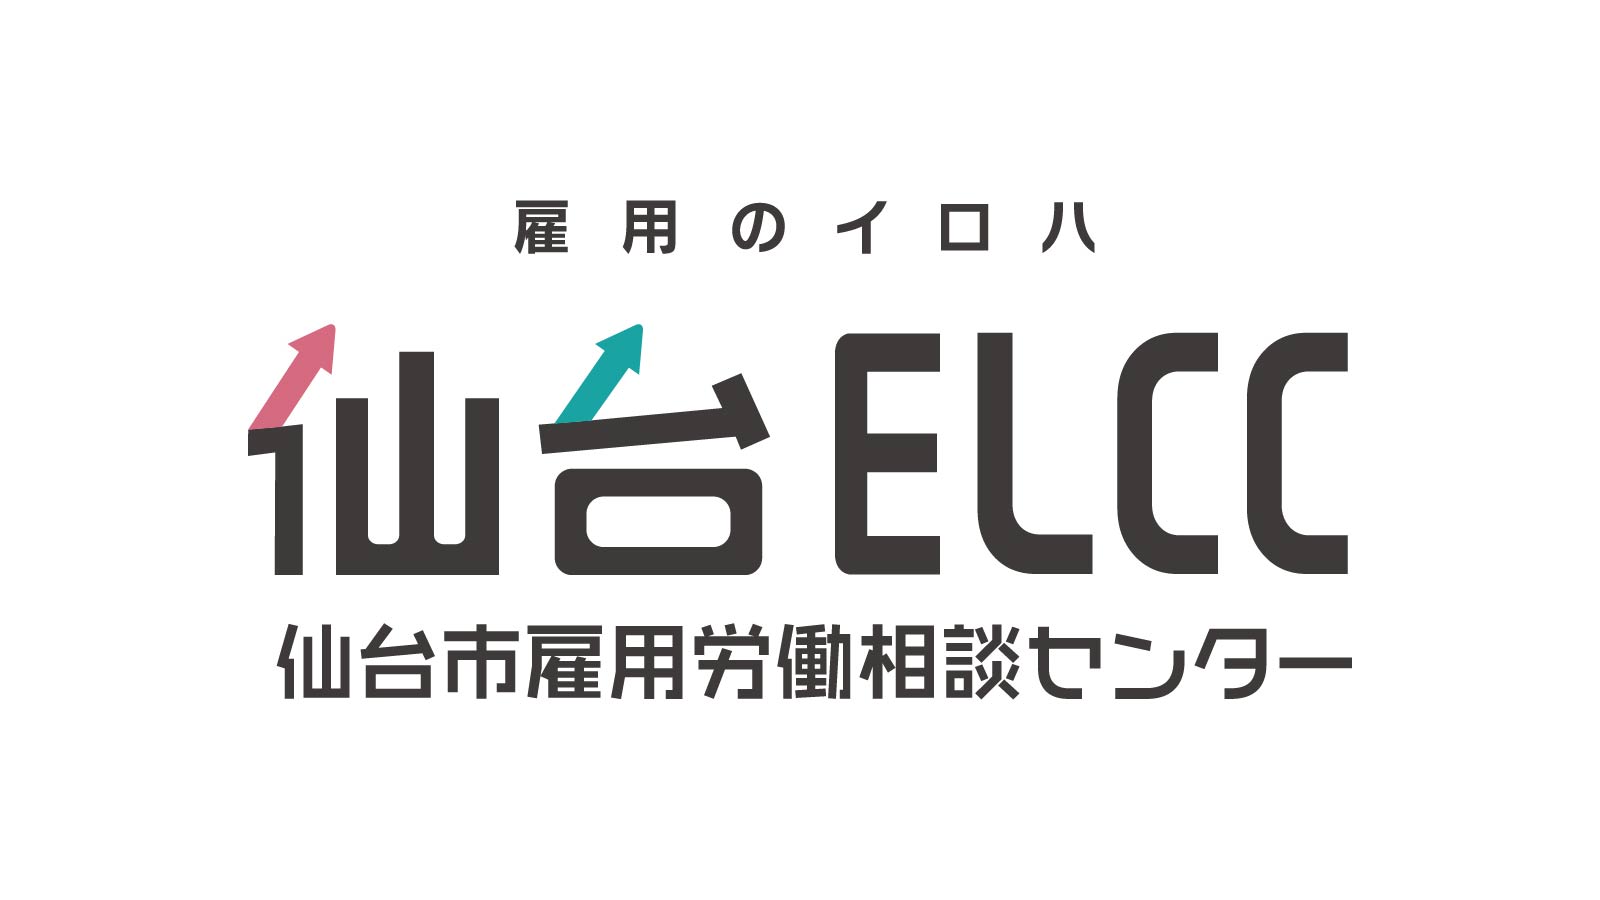 仙台ELCC 主催セミナー 「雇用形態にかかわらない公正な待遇の確保」